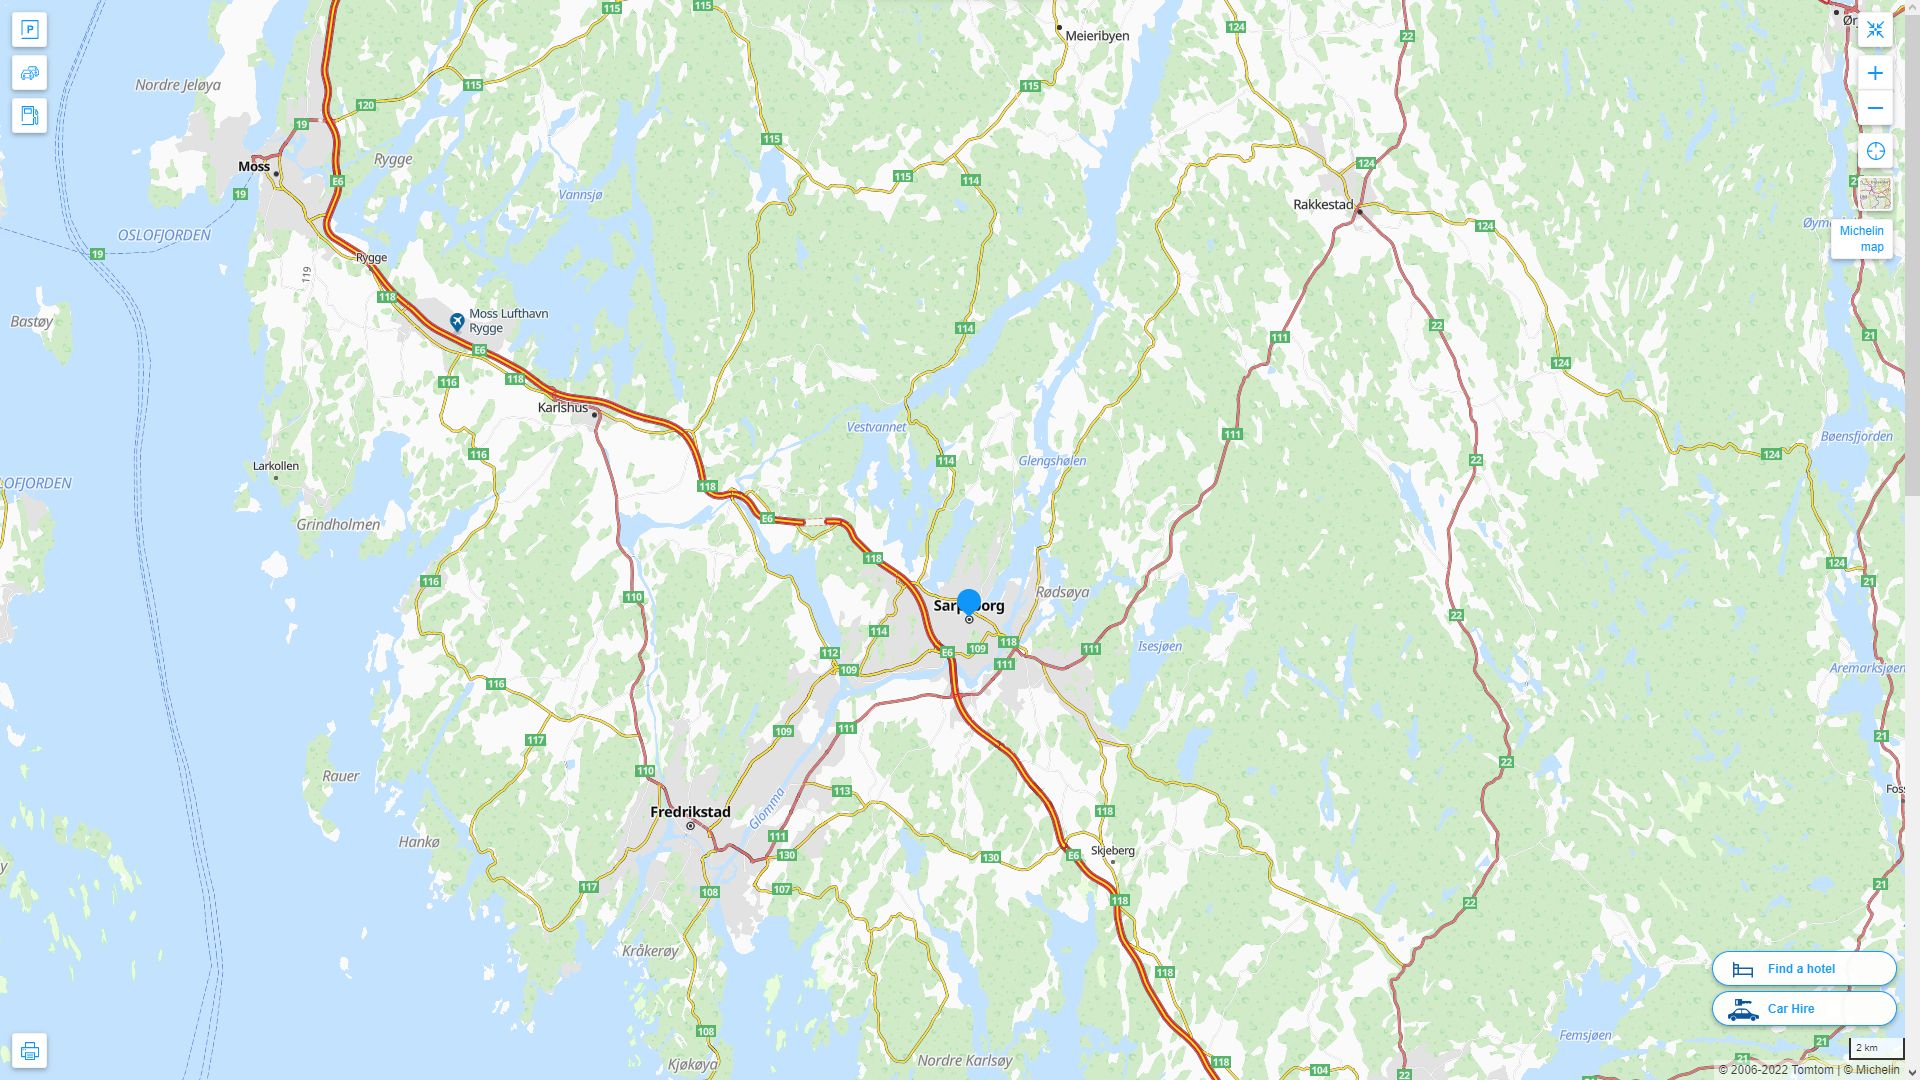 Sarpsborg Norvege Autoroute et carte routiere